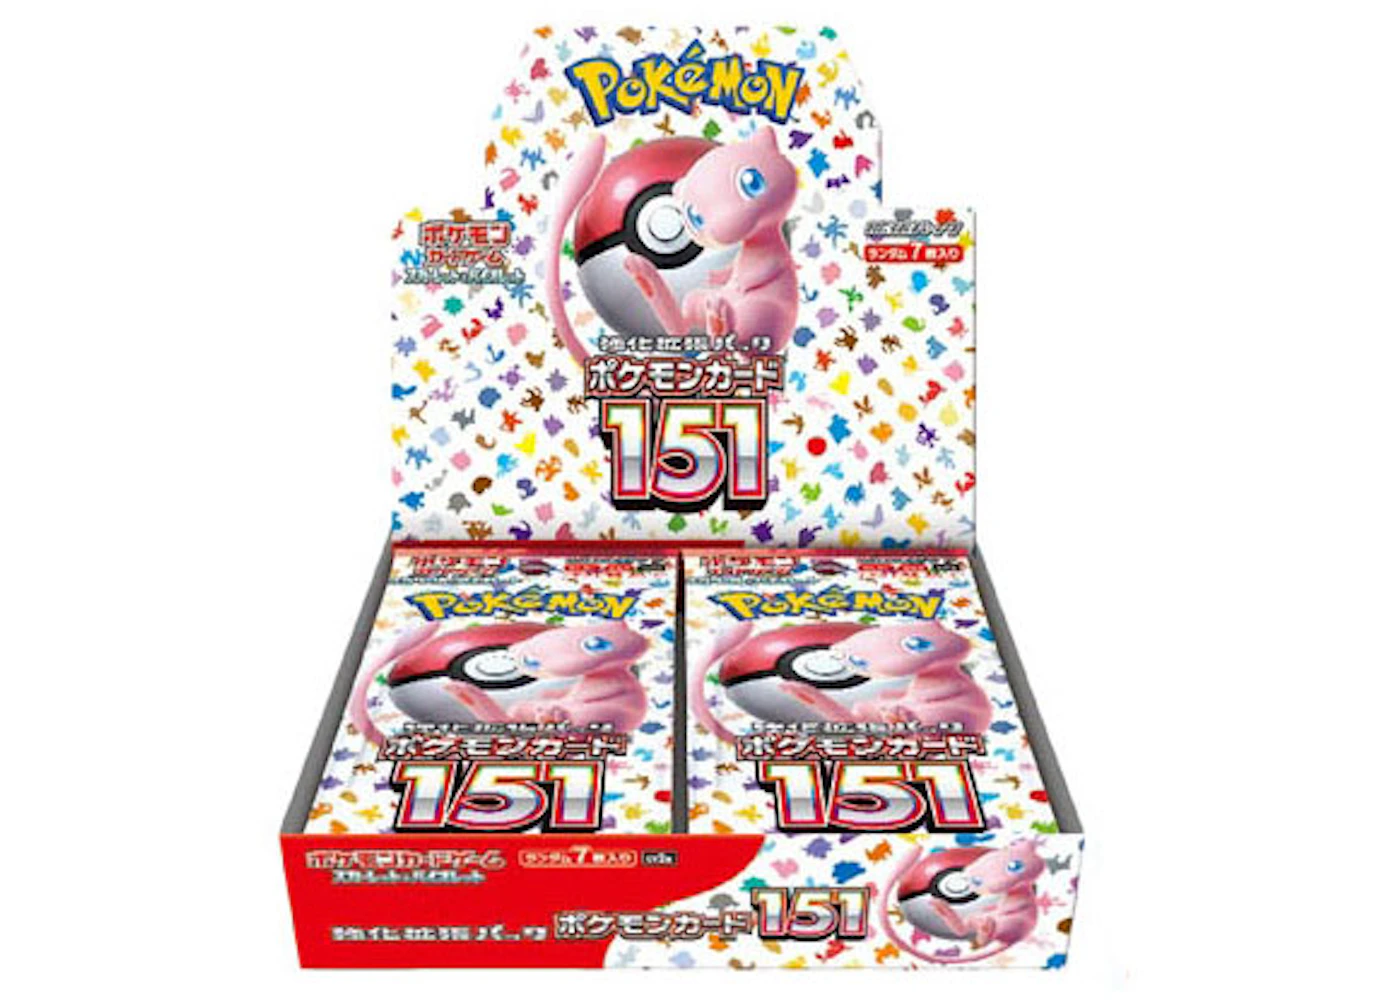 Pokémon TCG Scarlet & Violet 151 Enhanced Expansion Pack (Japanese